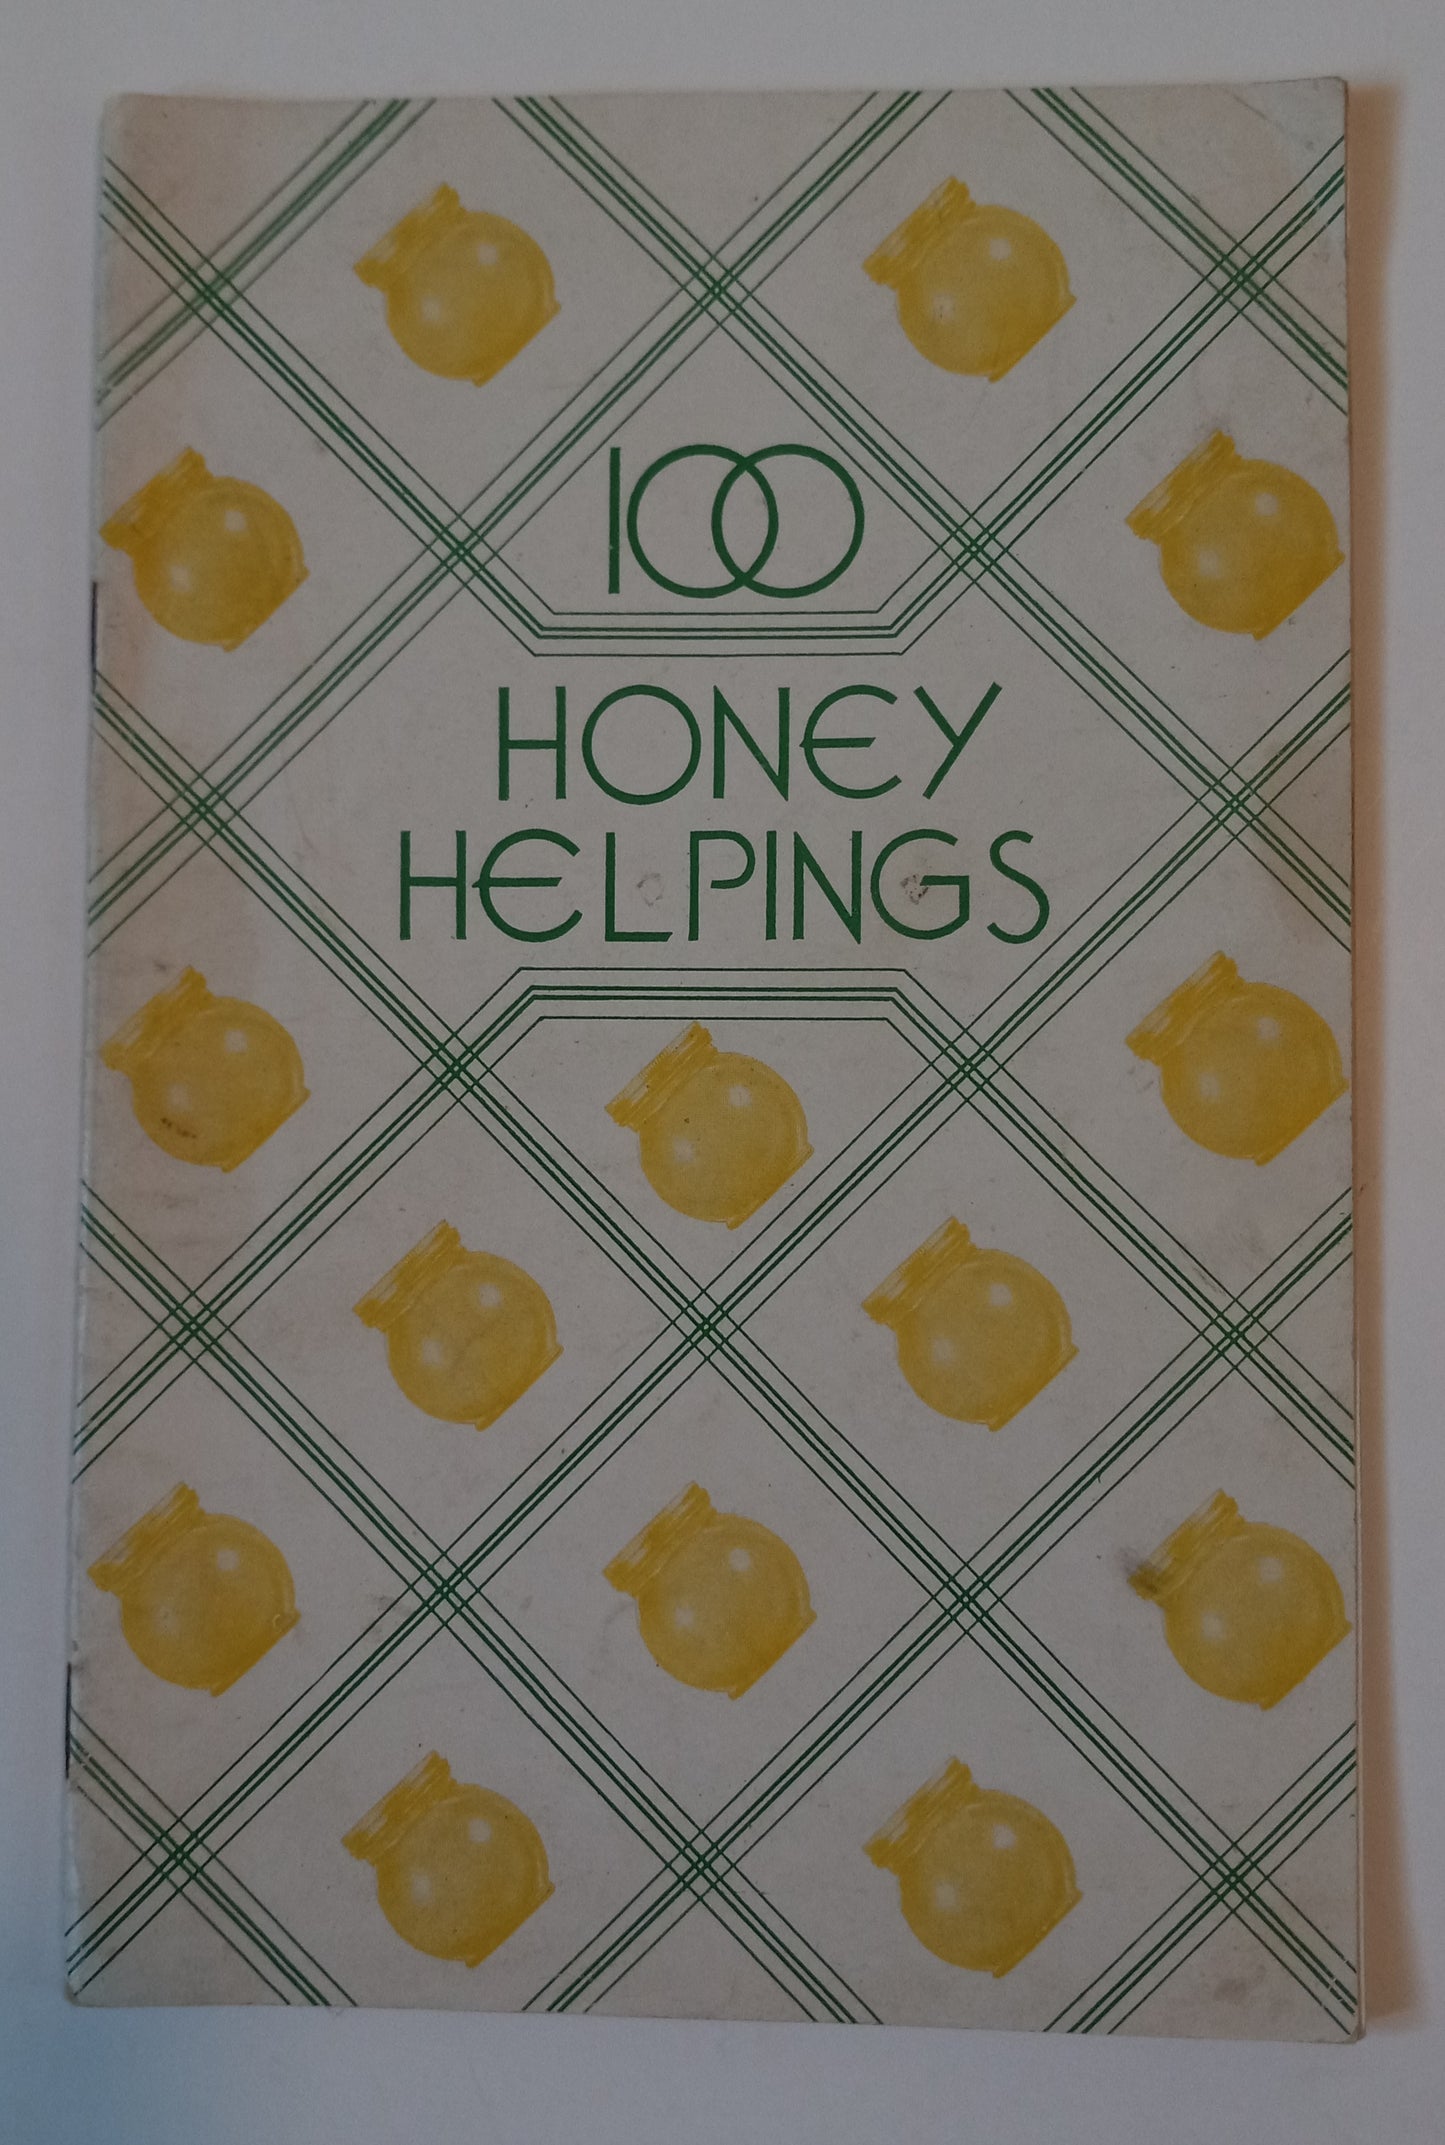 100 Honey Helpings